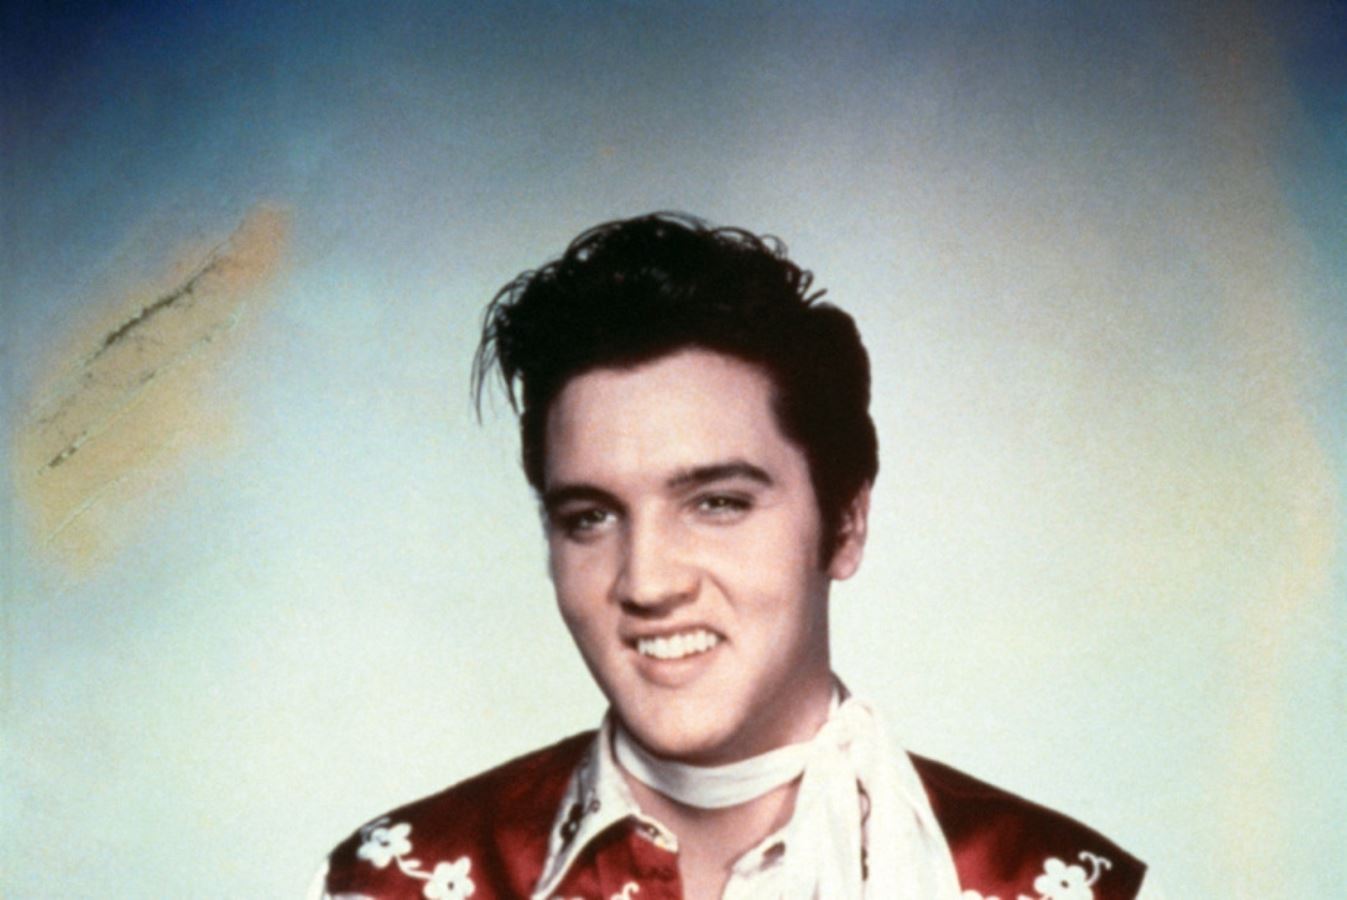 <p><strong>'Rock and Roll Kralı'</strong> olarak bilinen<strong> Elvis Presley (1935-1977)</strong>, 1950'lerin ortalarında ün kazandı ve kısa sürede 20. yüzyılın en ikonik ve etkili müzisyenlerinden biri oldu. Rock and roll'u popülerleştirerek bir müzik devrimi başlatmasıyla tanınır. İlk single'ı 'Heartbreak Hotel', müzik tarihinin akışını sonsuza dek değiştirdi.</p>
<p>Canlı şovları medyada büyük yankı uyandırdı ve kültürel bir fenomen haline geldi. <strong>"Kral"</strong> olarak ünlenmesi, ABD'de Billboard'un<strong> Hot 100 pop</strong> listesinde yer alan toplam 149 şarkısıyla ve inanılmaz müzik kariyerinden kaynaklanmaktadır.</p>
<p>İşte Rock'n Roll'un kralı Elvis Presley hakkında 10 büyüleyici gerçek...</p>